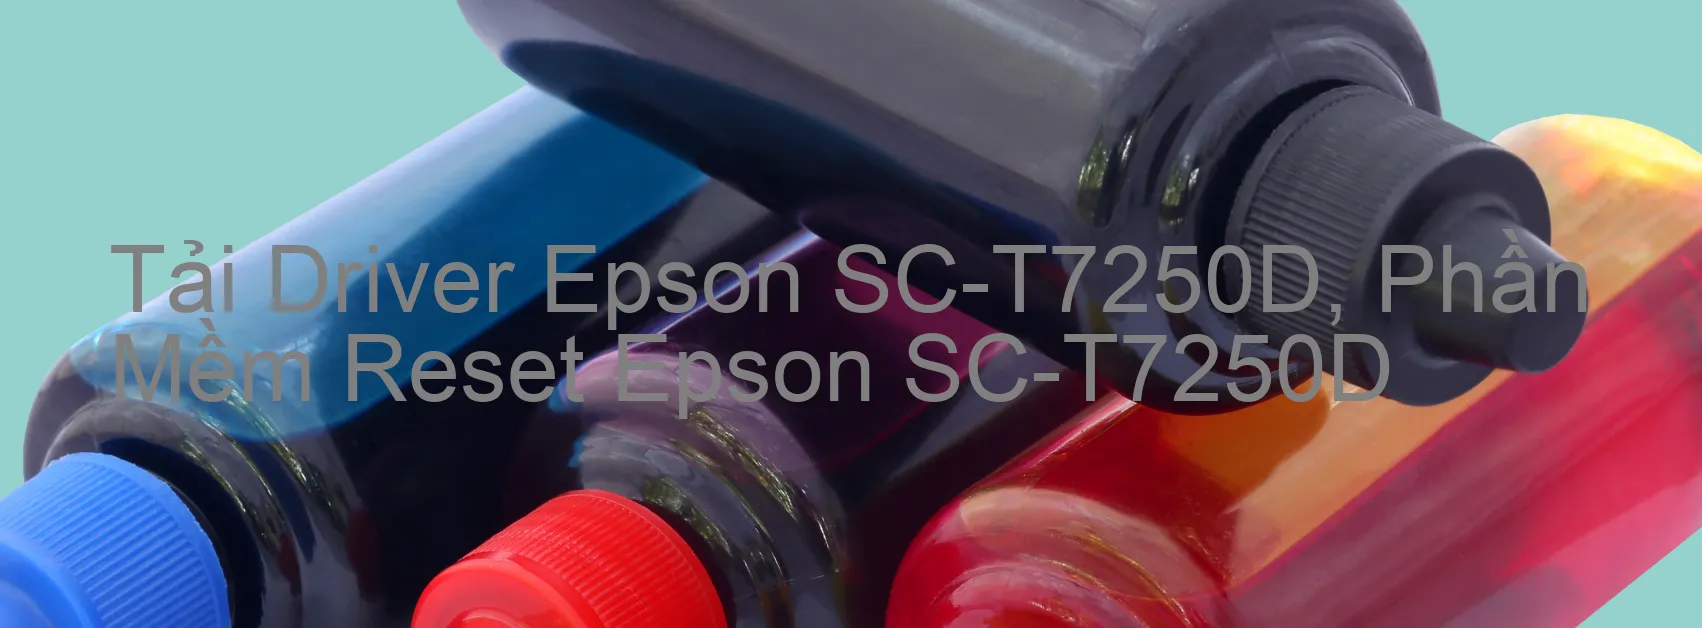 Driver Epson SC-T7250D, Phần Mềm Reset Epson SC-T7250D